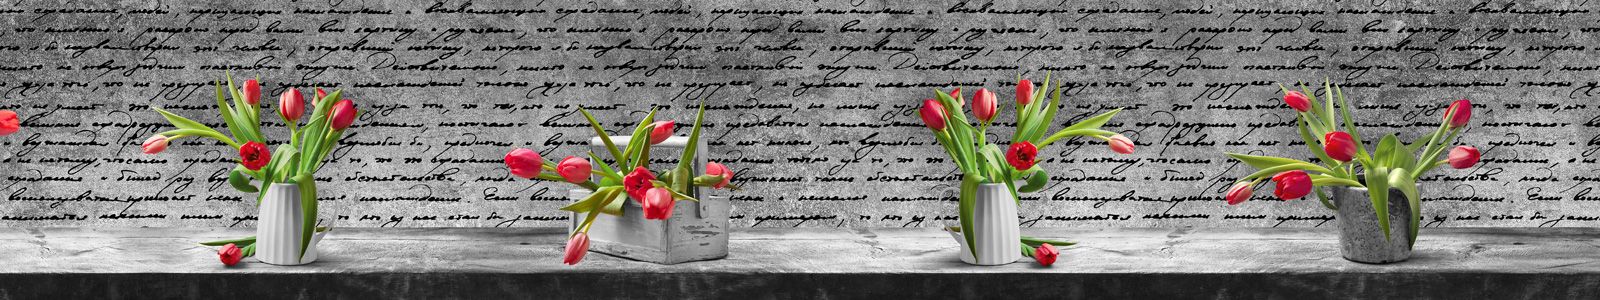 №6717 - Тюльпаны в вазах на столе